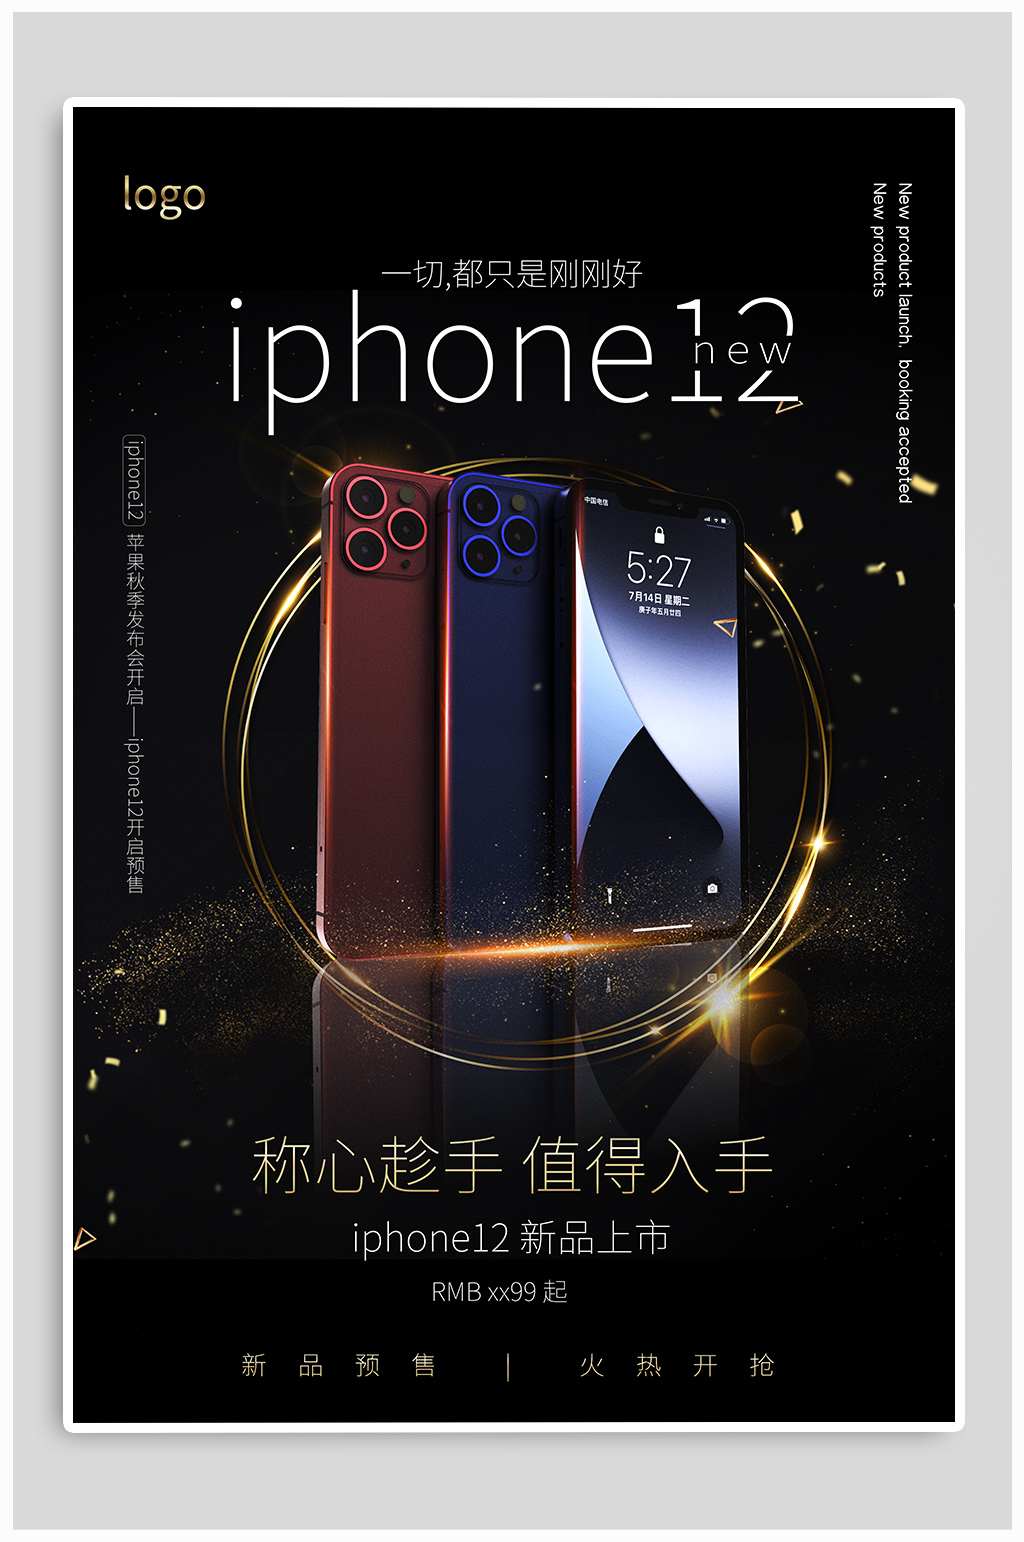 iphone12宣传广告语图片